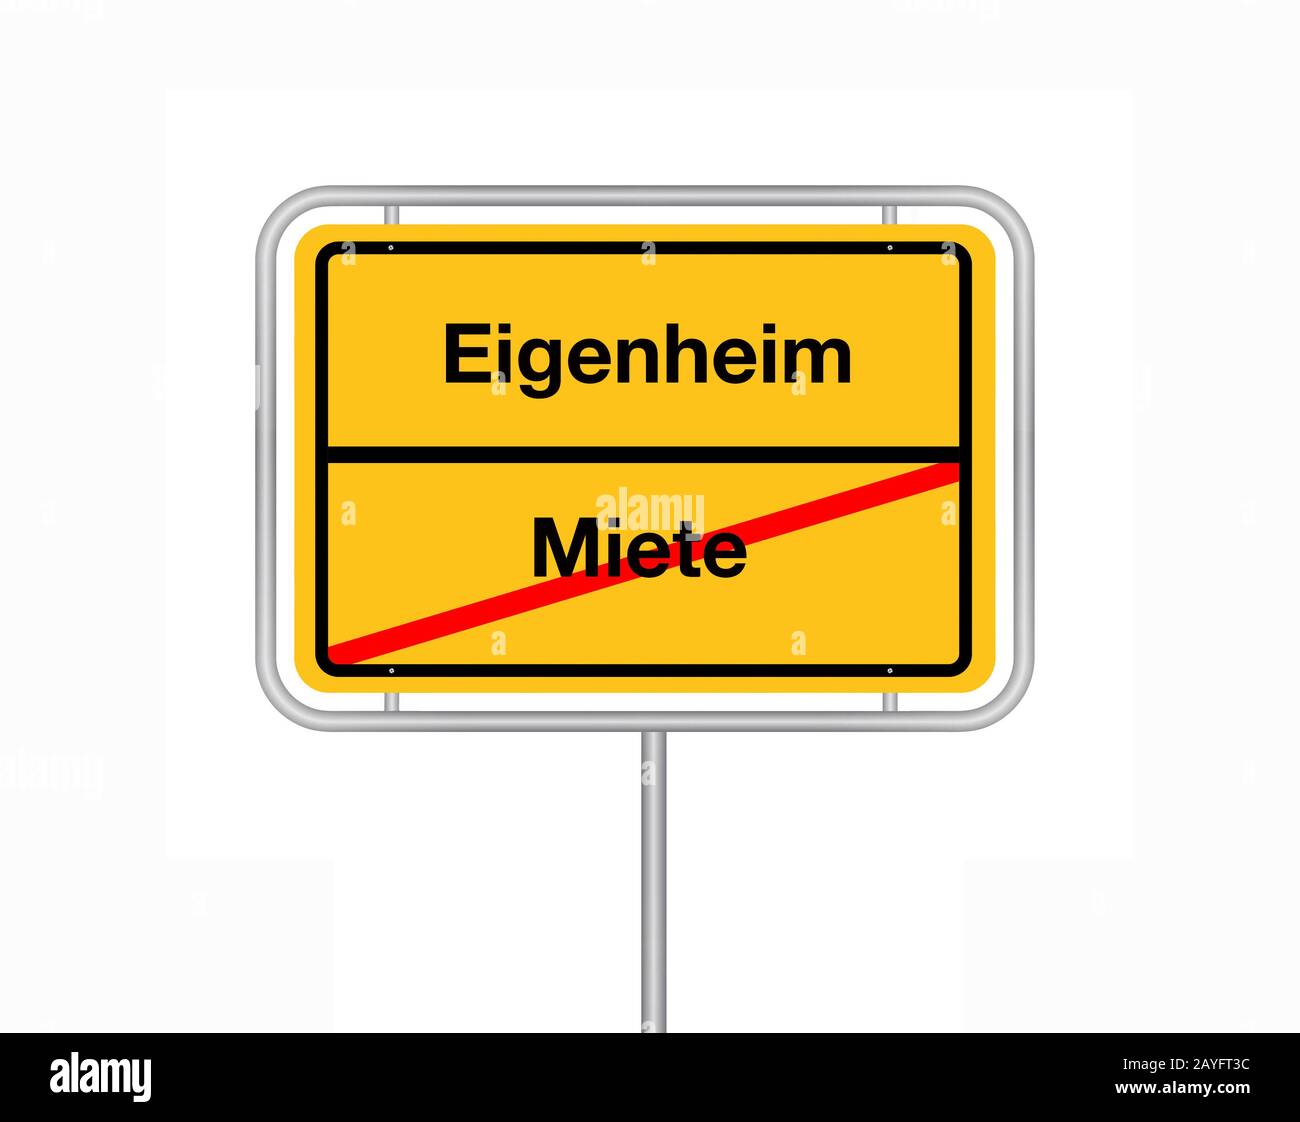 Signo de límite de la ciudad letras Miete - Eigenheim, alojamiento - casa de campo, Alemania Foto de stock